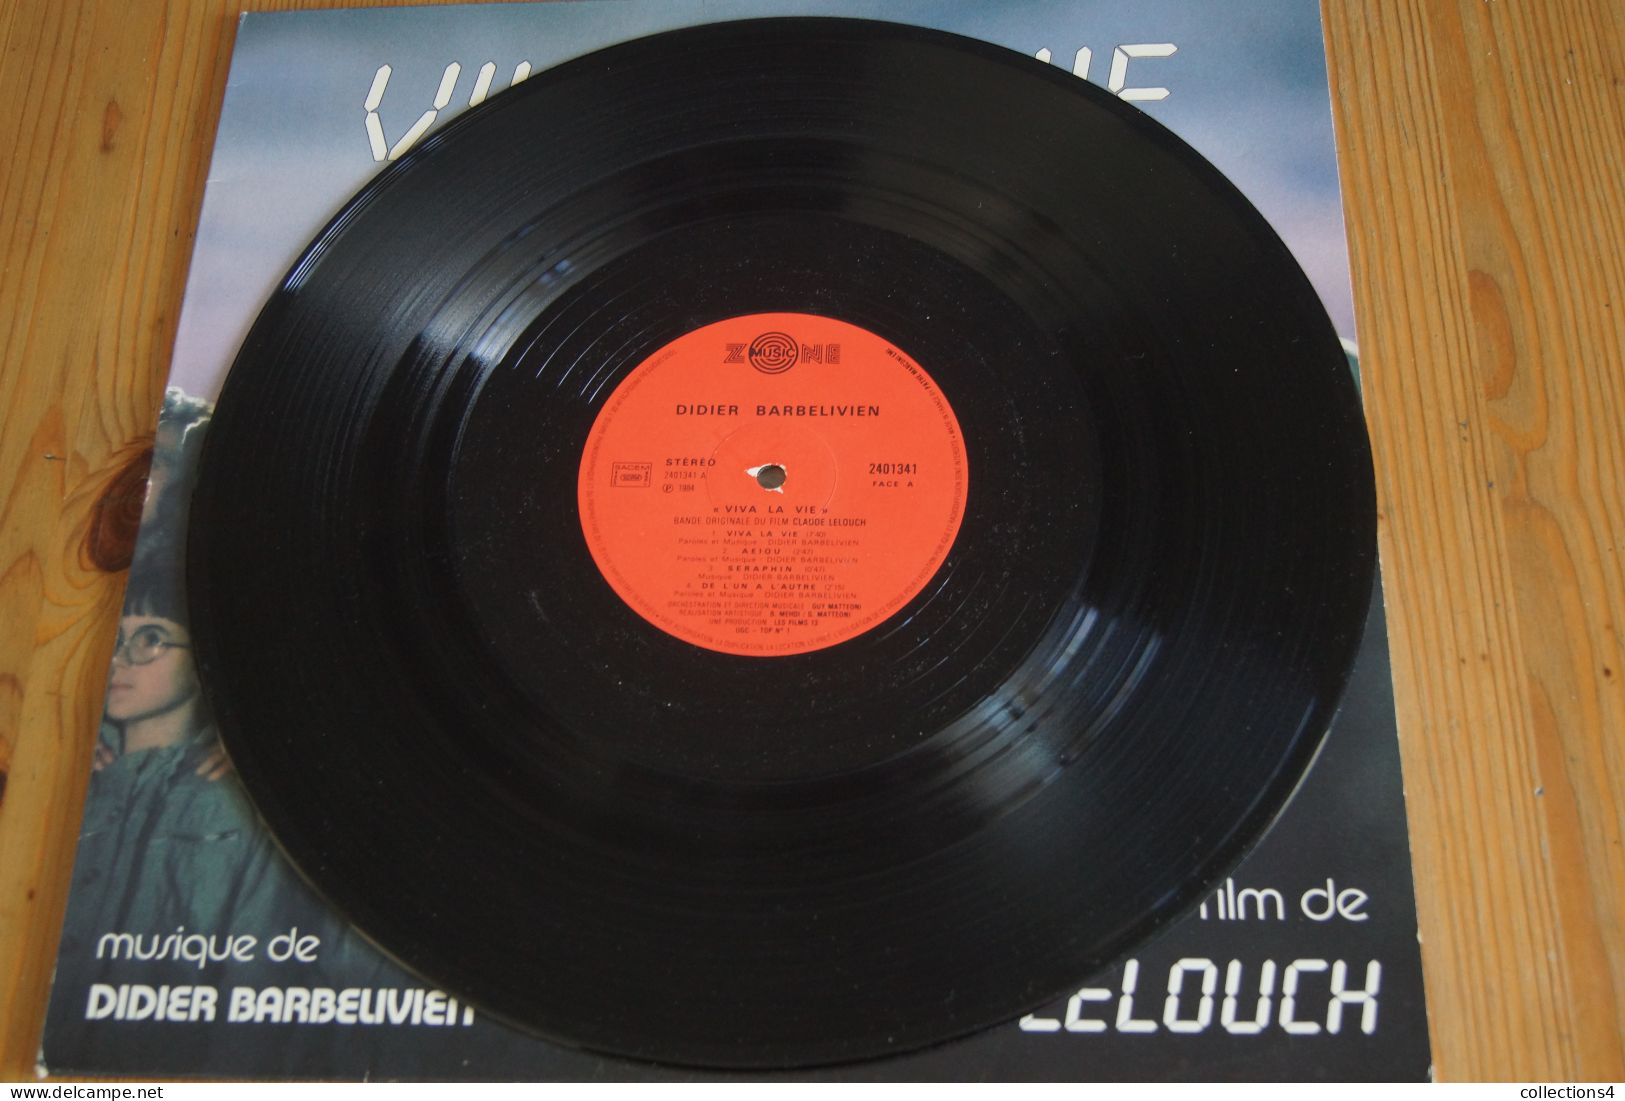 DIDIER BARBELIVIEN VIVA LA VIE AZNAVOUR PICCOLI TRINTIGNANT ANOUK AIME LELOUCH LP DU FILM 1984 VALEUR+   ELECTRO NEW AGE - Soundtracks, Film Music